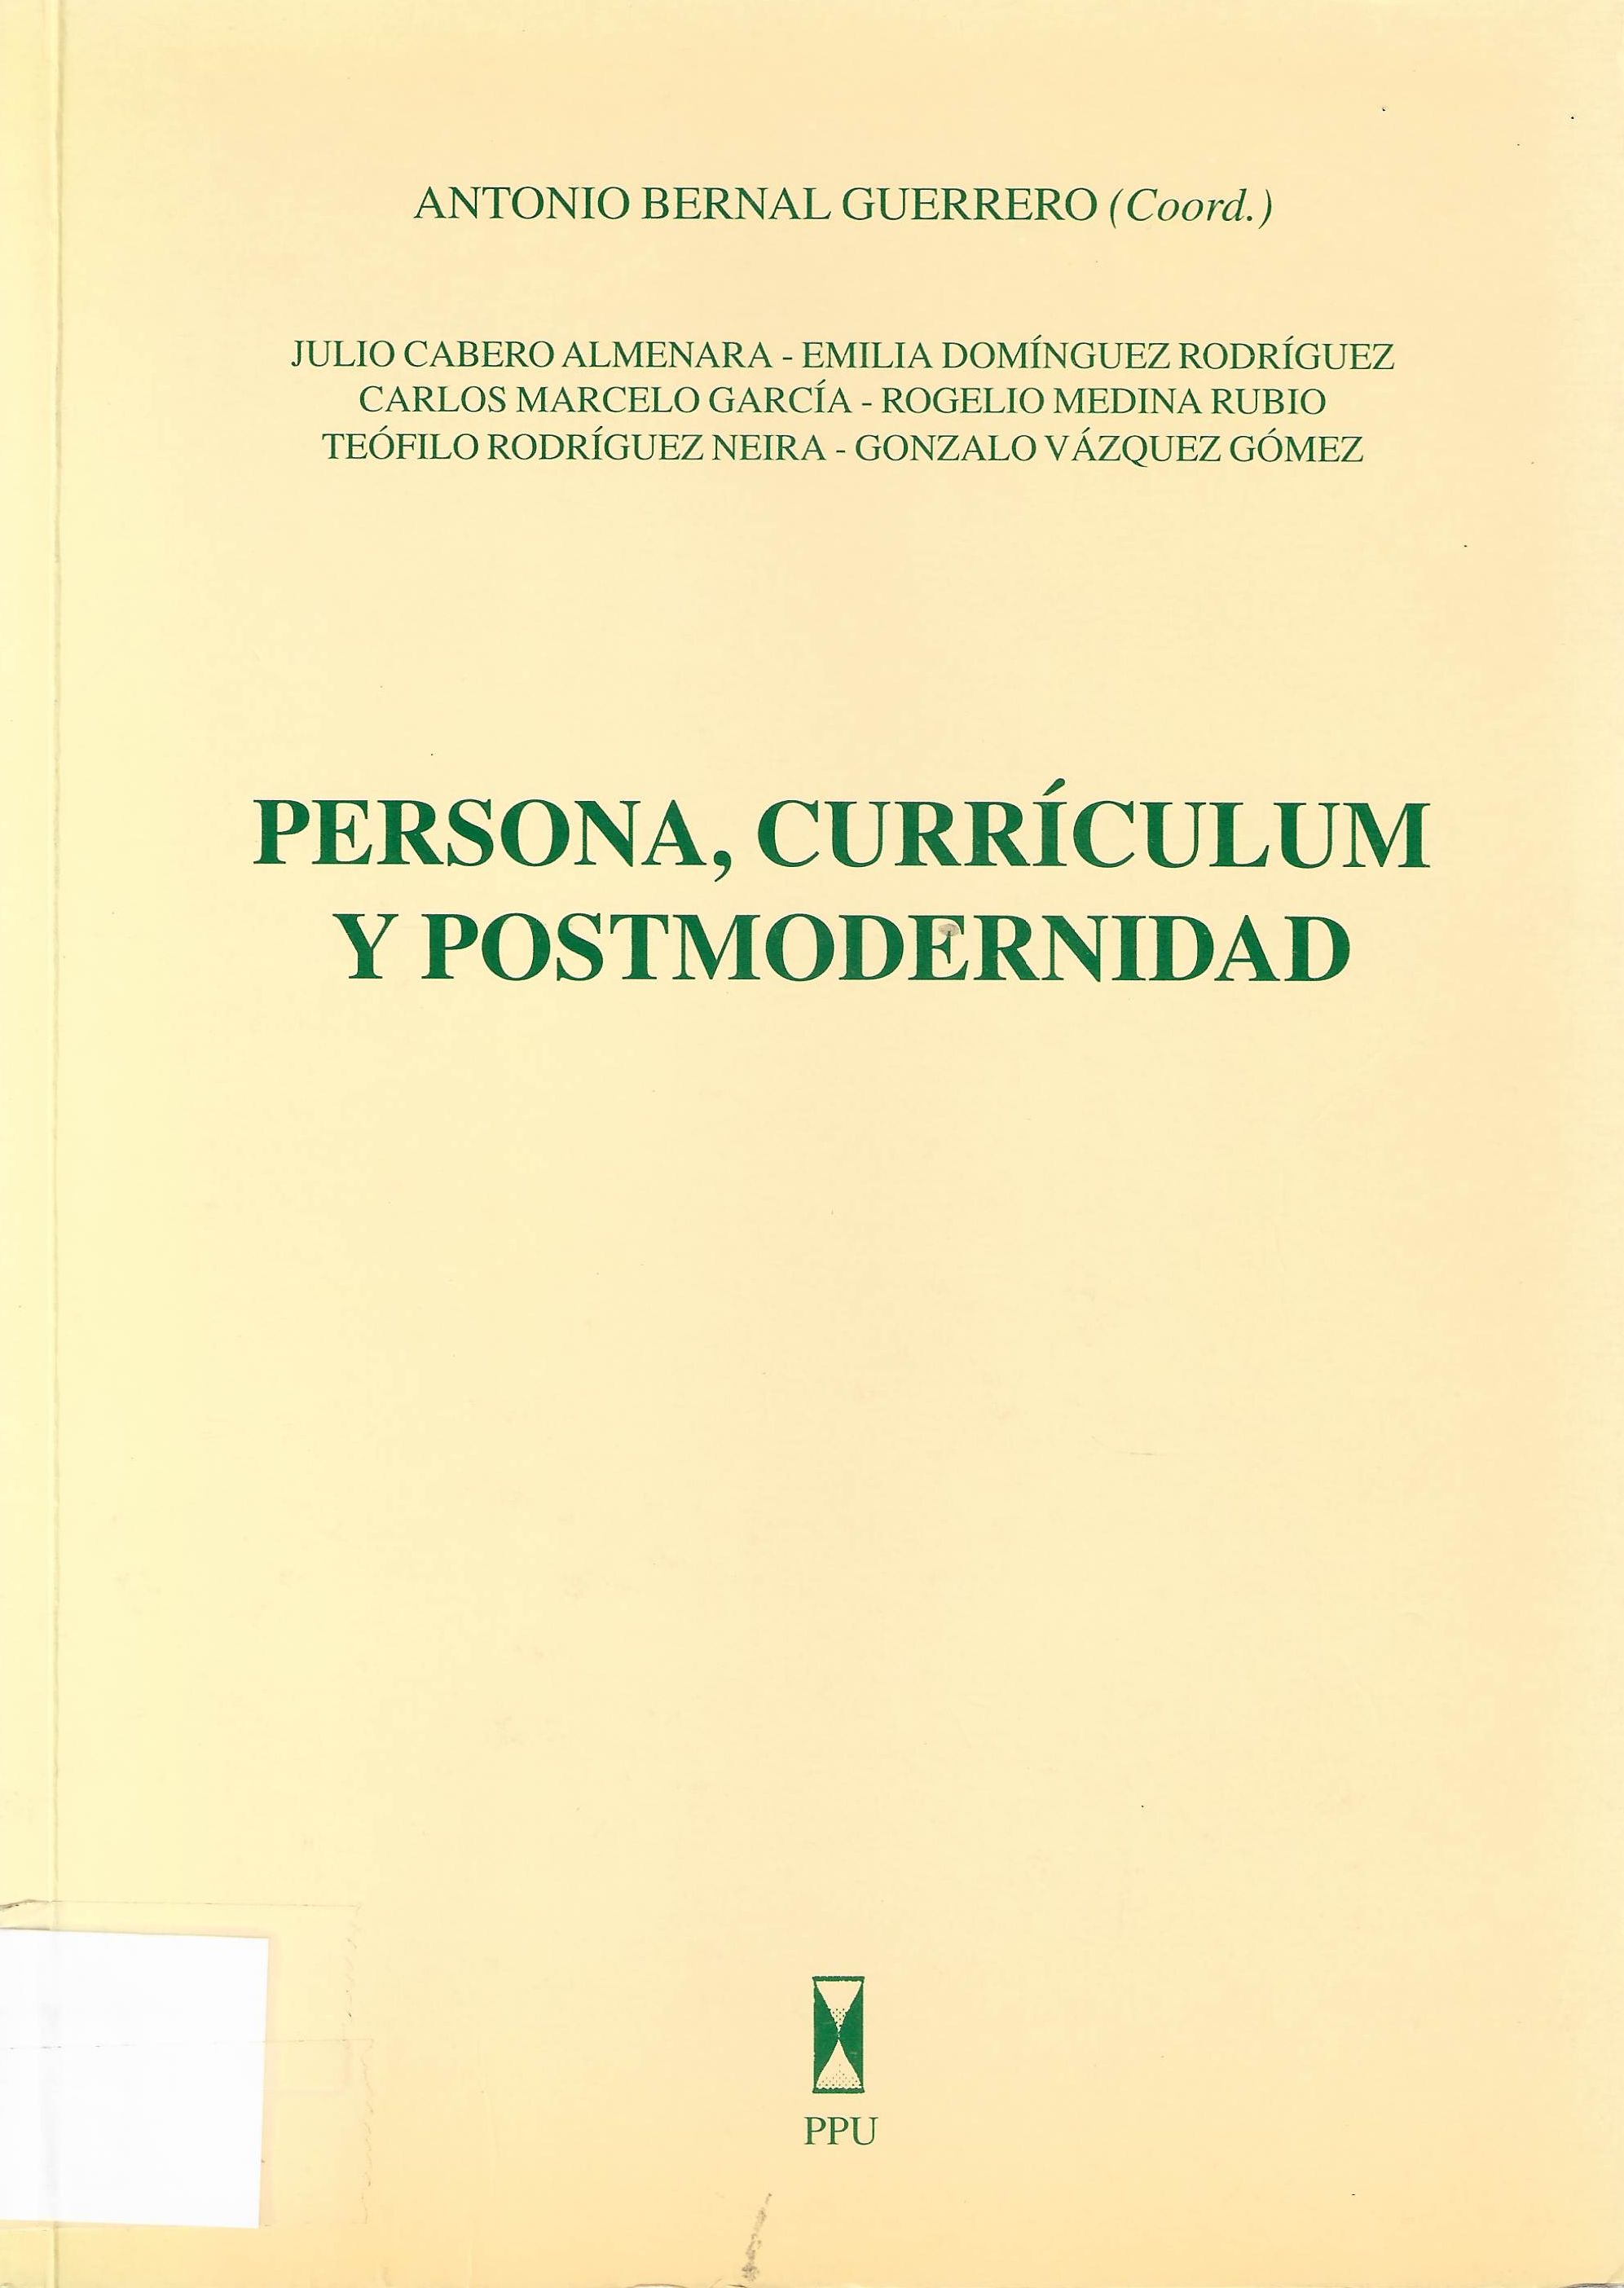 Imagen de portada del libro Persona, currículum y postmodernidad